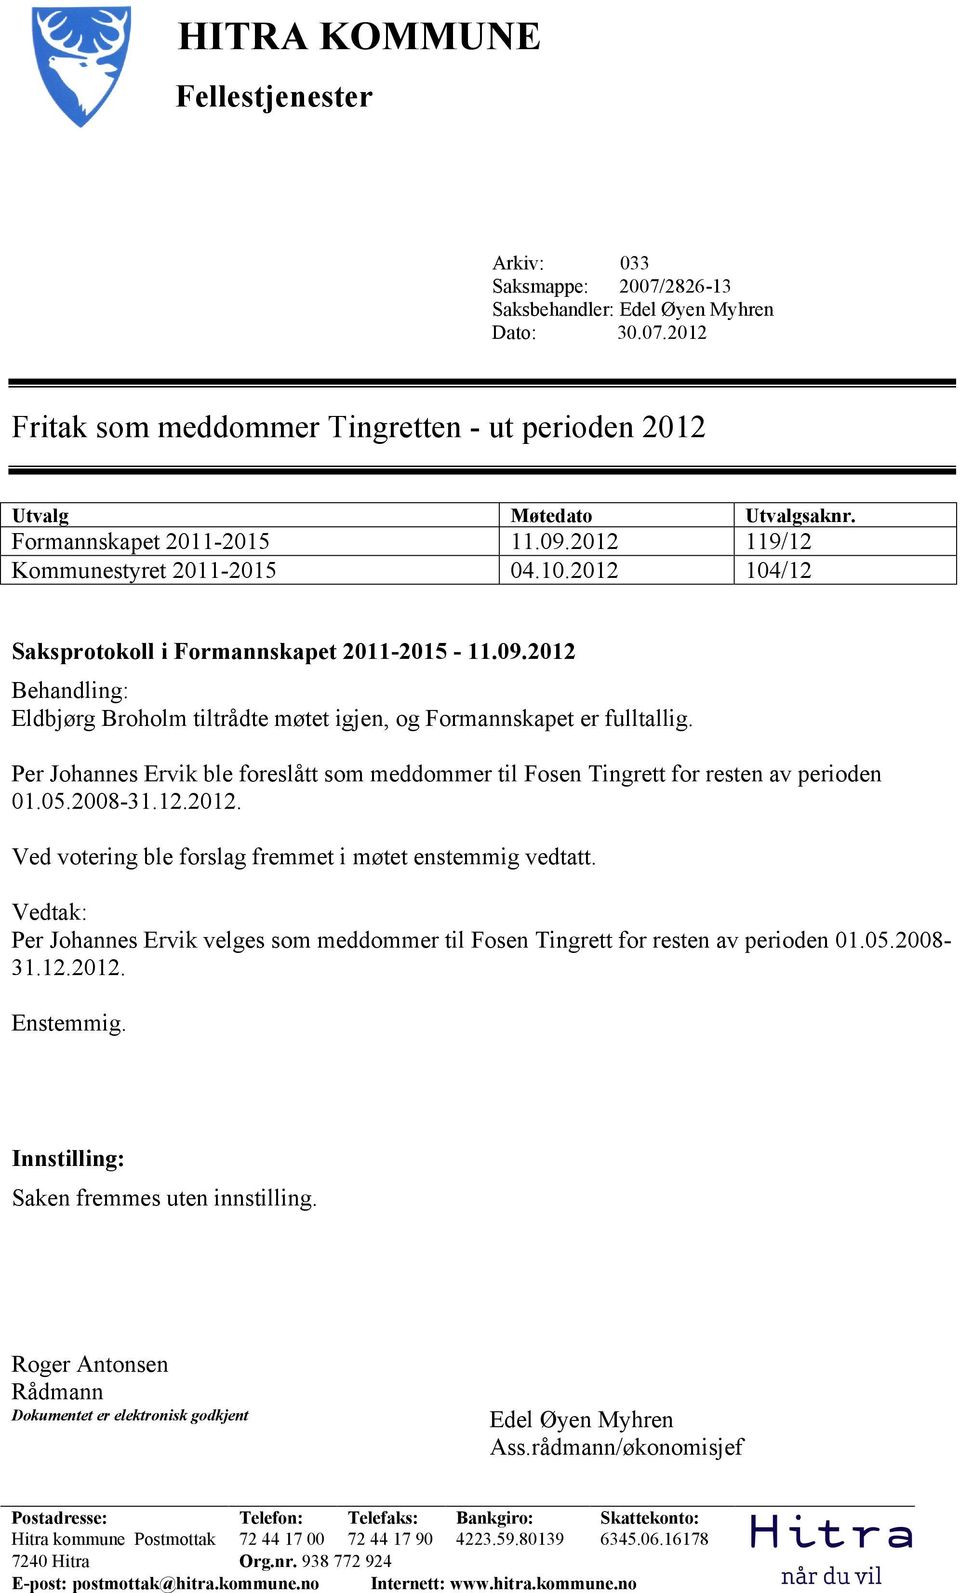 Per Johannes Ervik ble foreslått som meddommer til Fosen Tingrett for resten av perioden 01.05.2008-31.12.2012. Ved votering ble forslag fremmet i møtet enstemmig vedtatt.